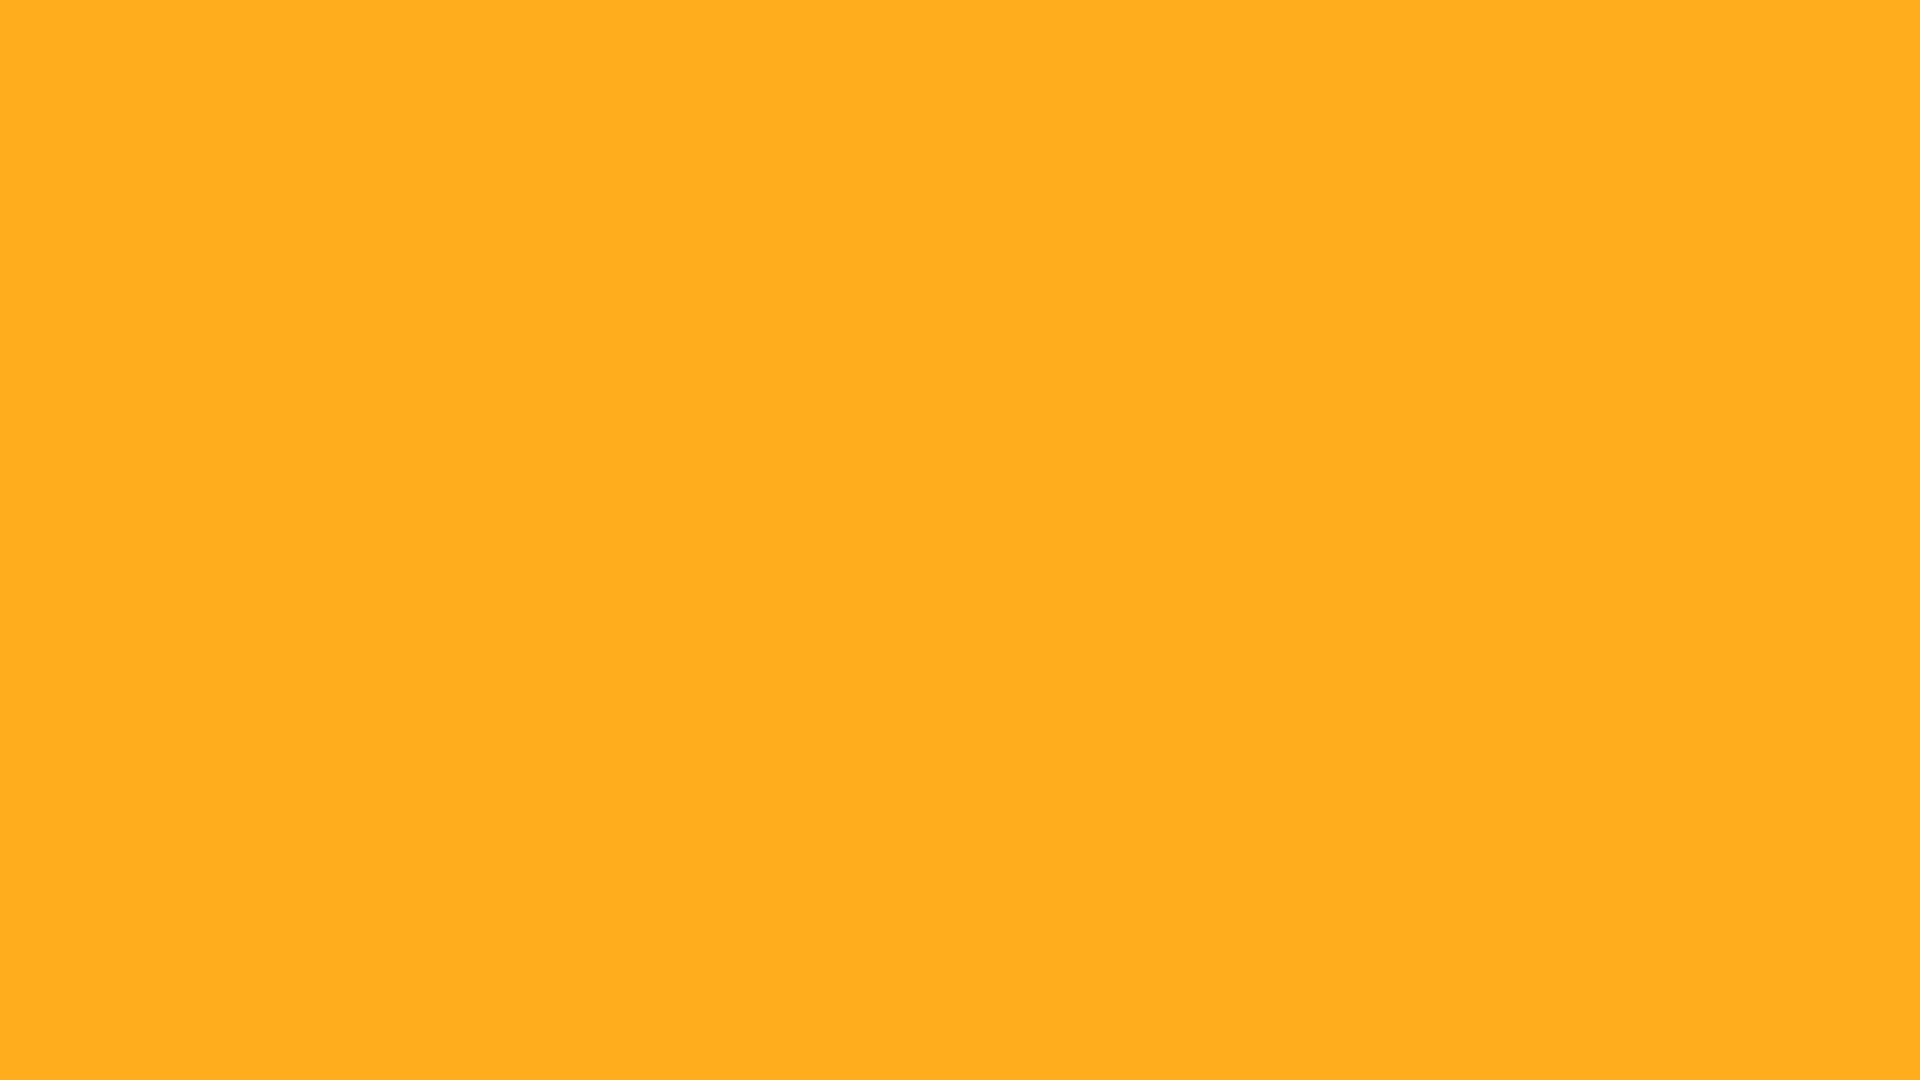 Màu cam sáng là một gam màu đẹp và thu hút sự chú ý của nhiều người. Với mã màu HTML của màu cam sáng, bạn có thể tạo ra các trang web hoàn hảo với những chi tiết tinh tế và độc đáo. Hãy tìm hiểu thêm về thông tin và mã màu cam sáng để trang web của bạn có thể nổi bật hơn.